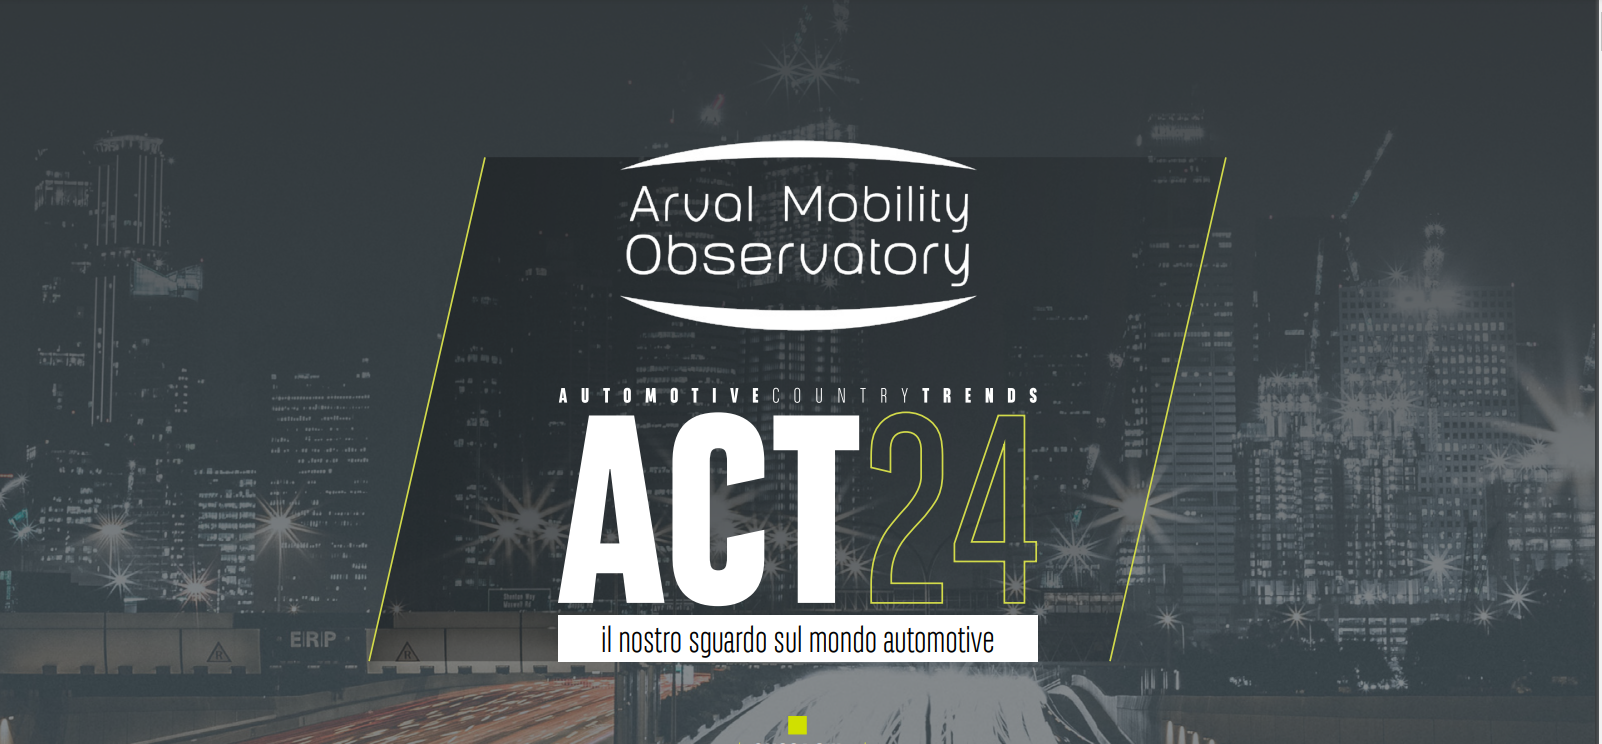 ACT24: i trend economici e le aspettative per l’Automotive secondo Arval Mobility